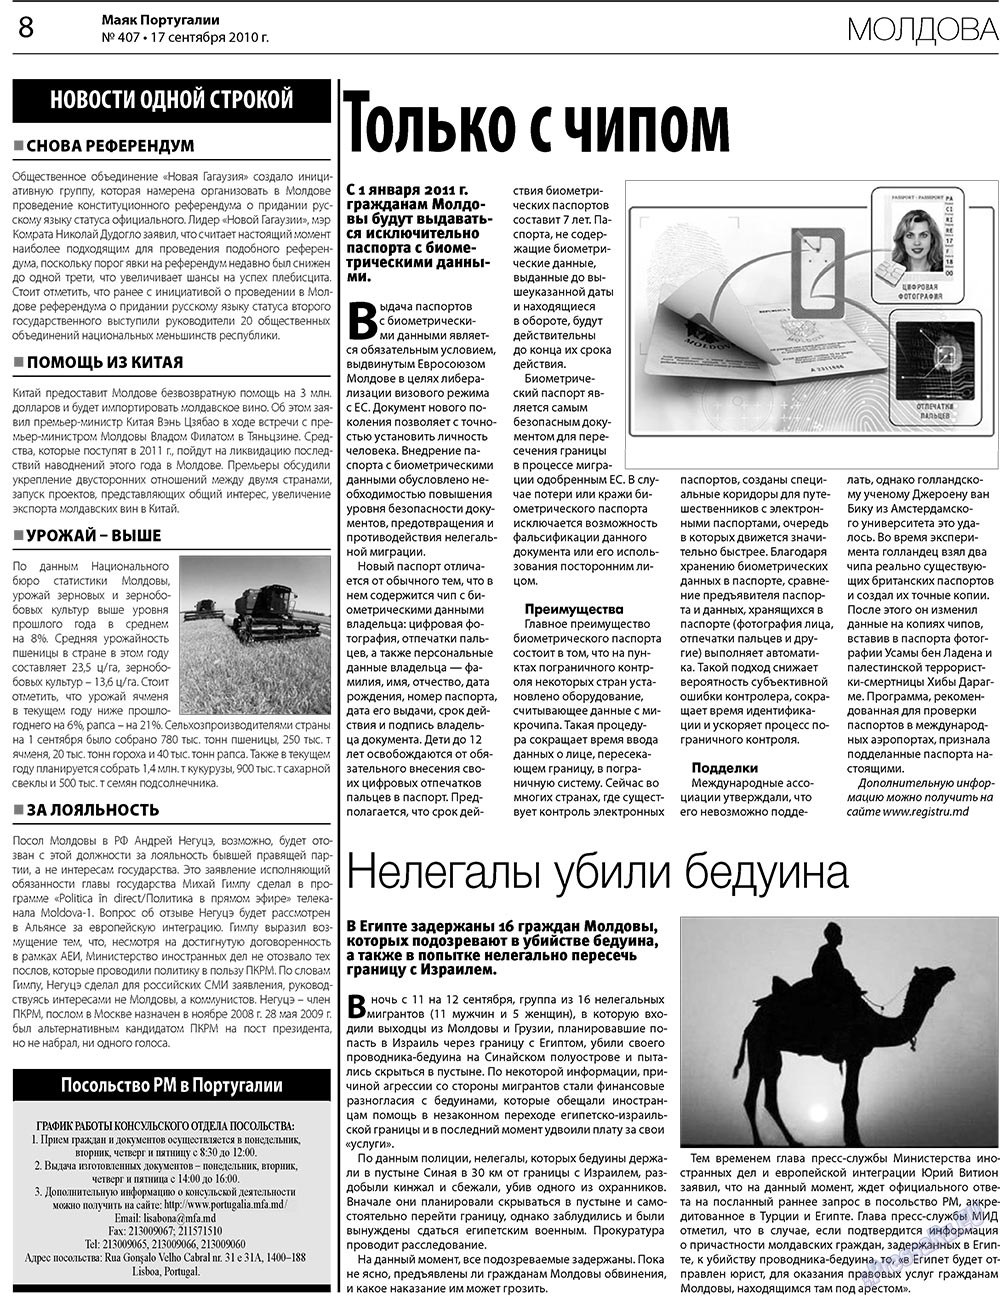 Маяк Португалии (газета). 2010 год, номер 407, стр. 8